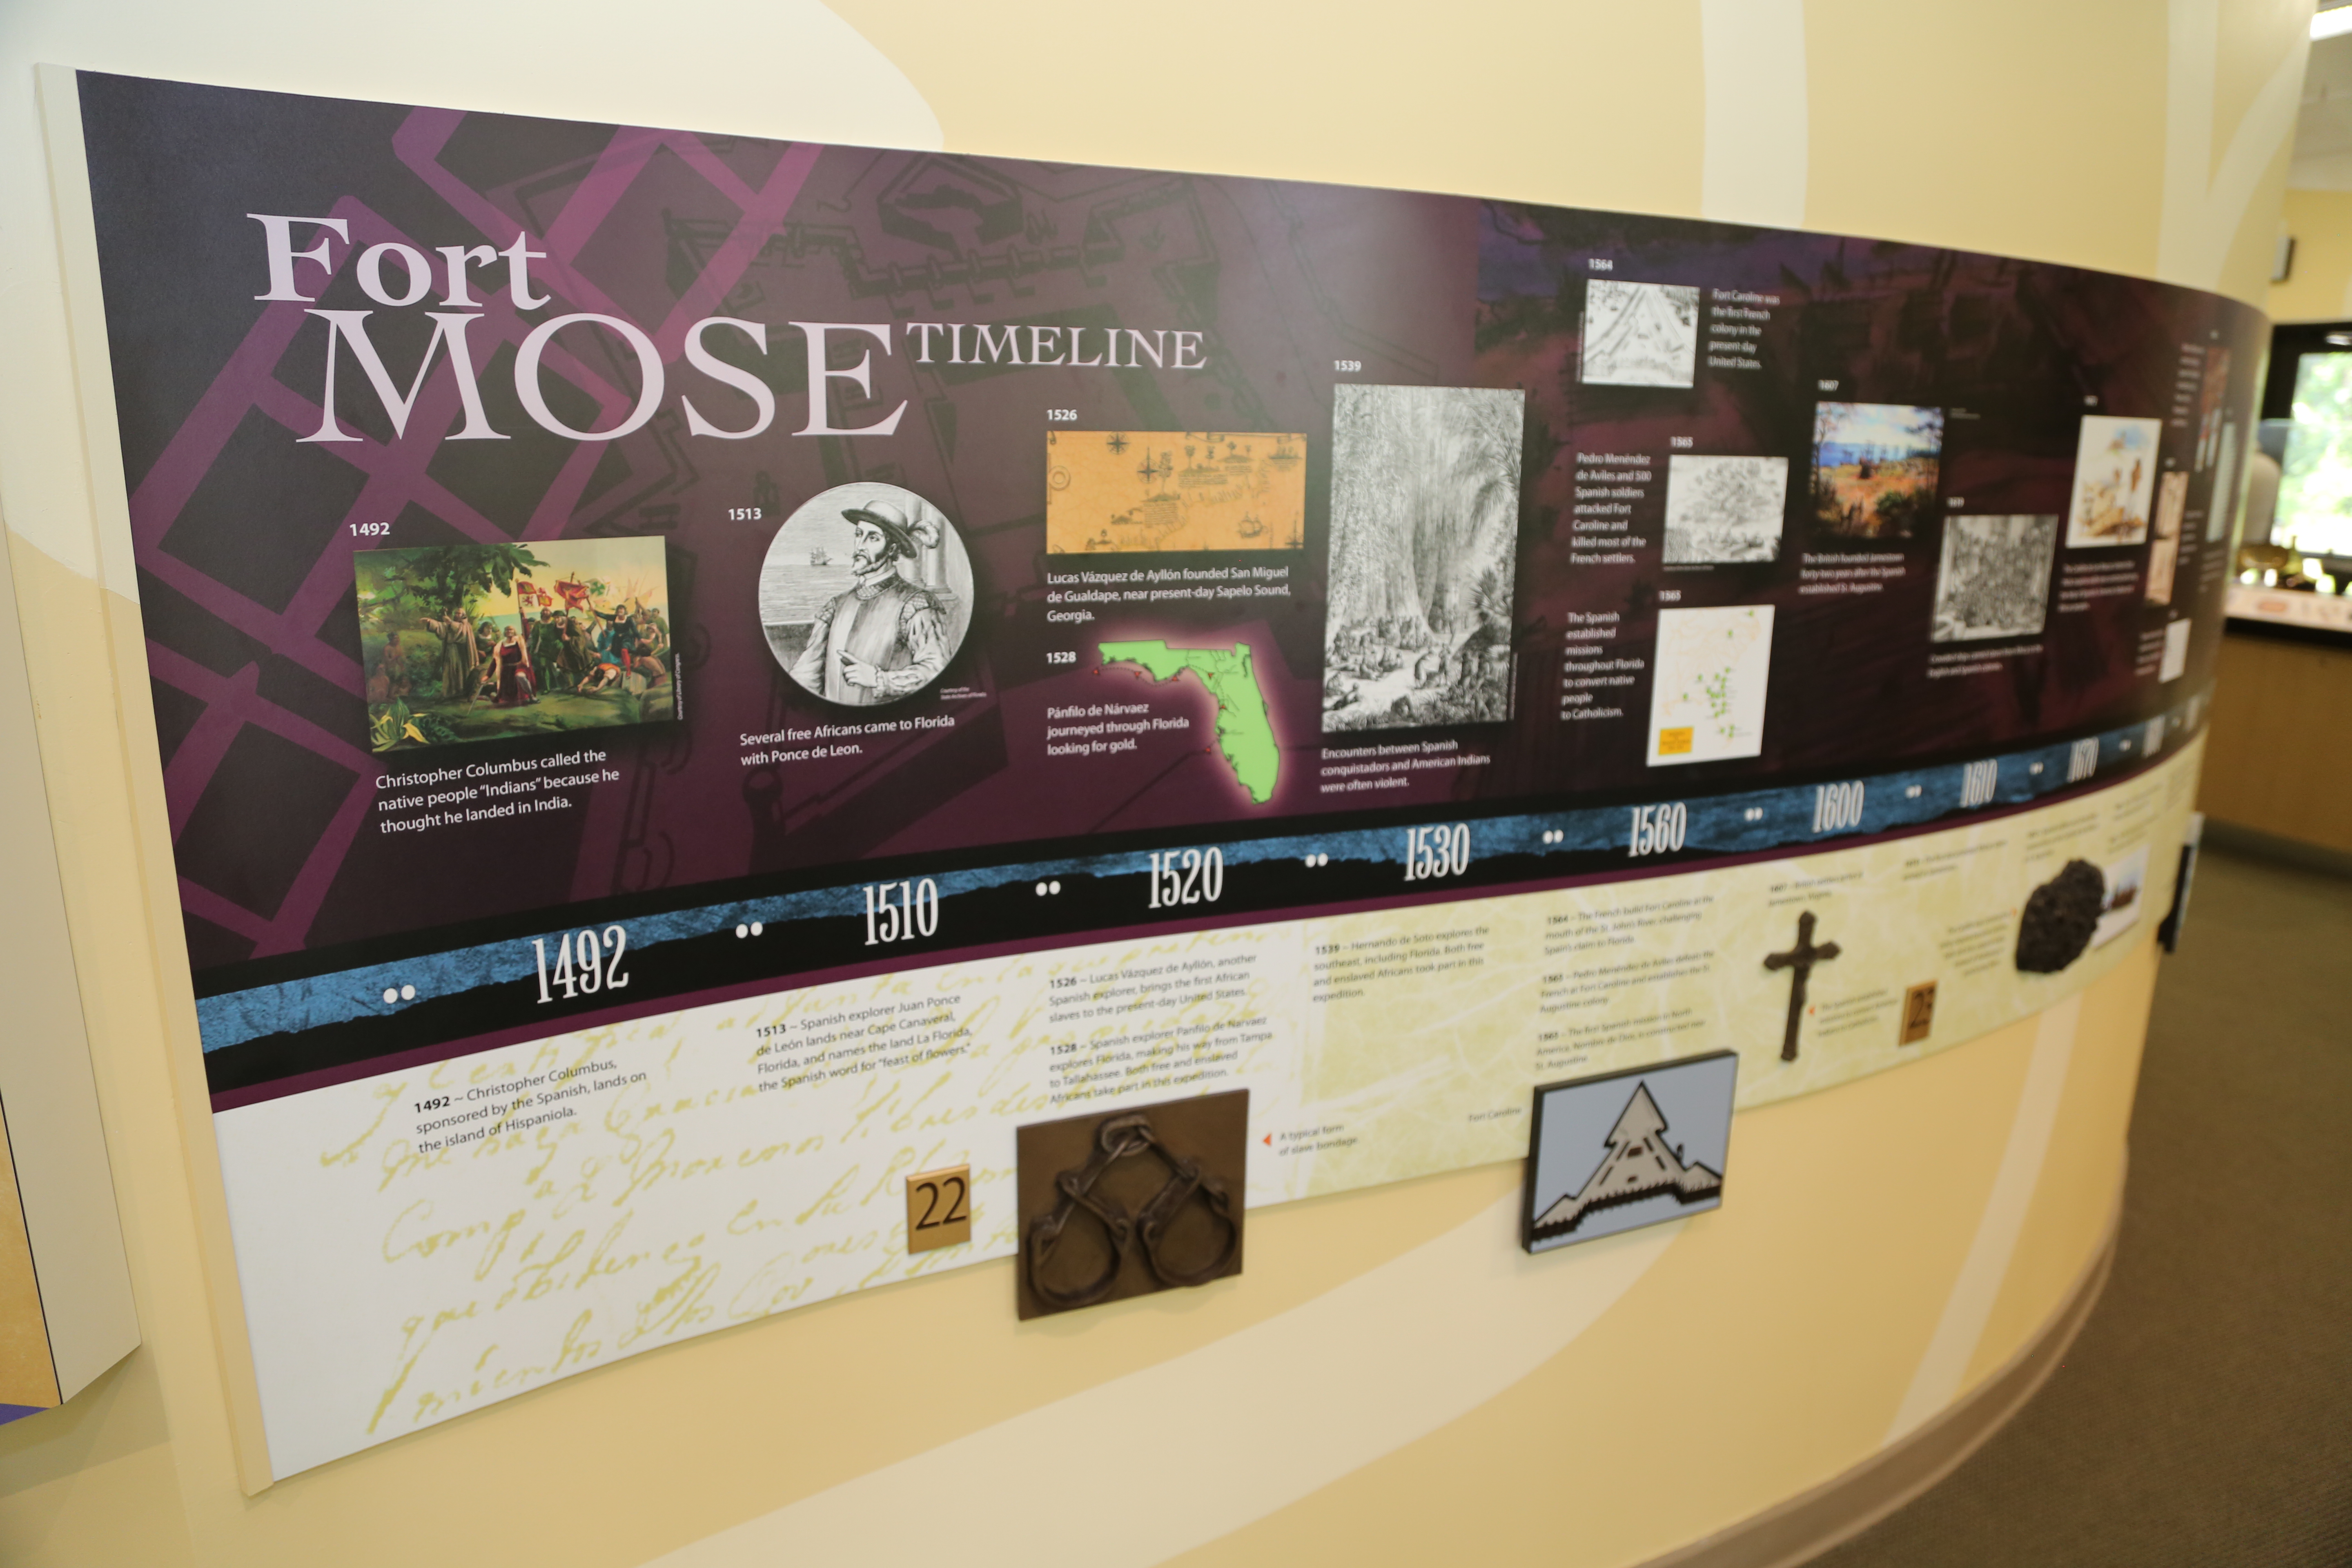 Fort Mose Timeline